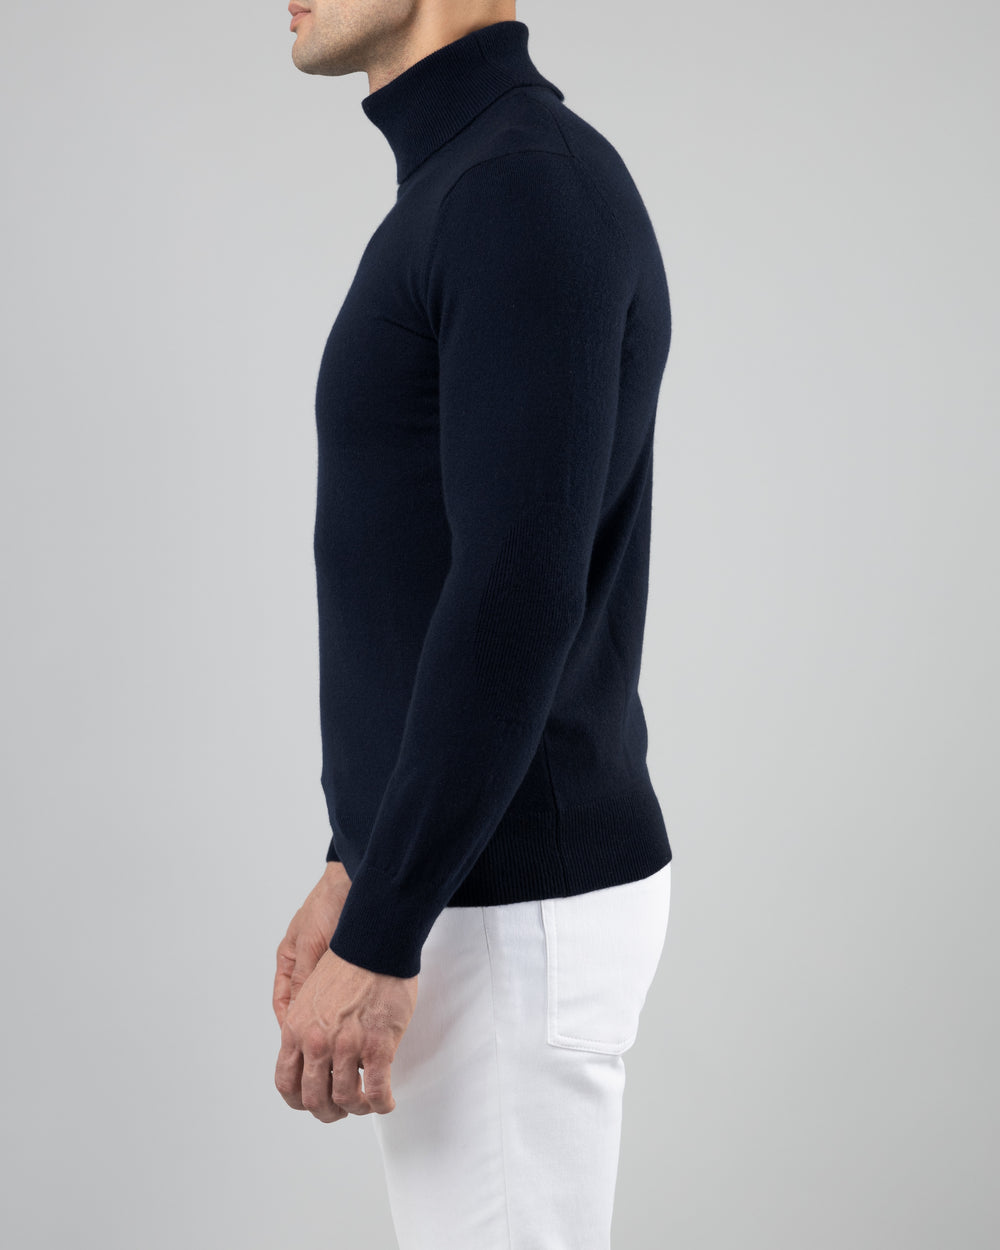 Aspen Cashmere Turtleneck Sweater, Dark Blue